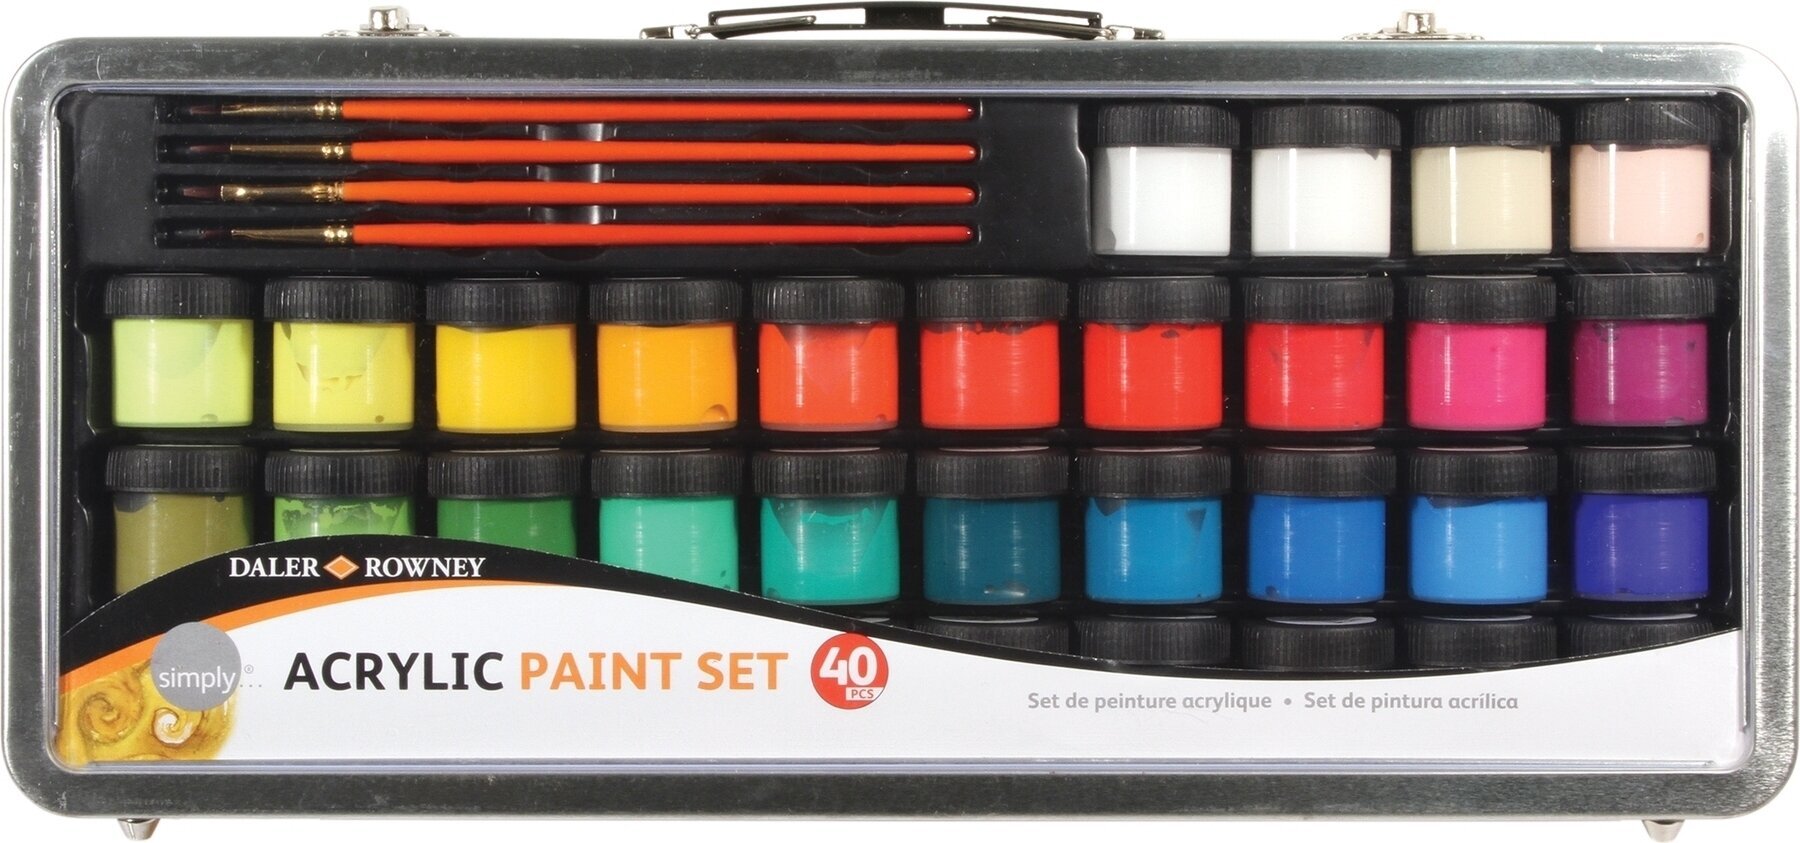 Akrilna boja Daler Rowney Simply Set akrilnih boja 34 x 18 ml